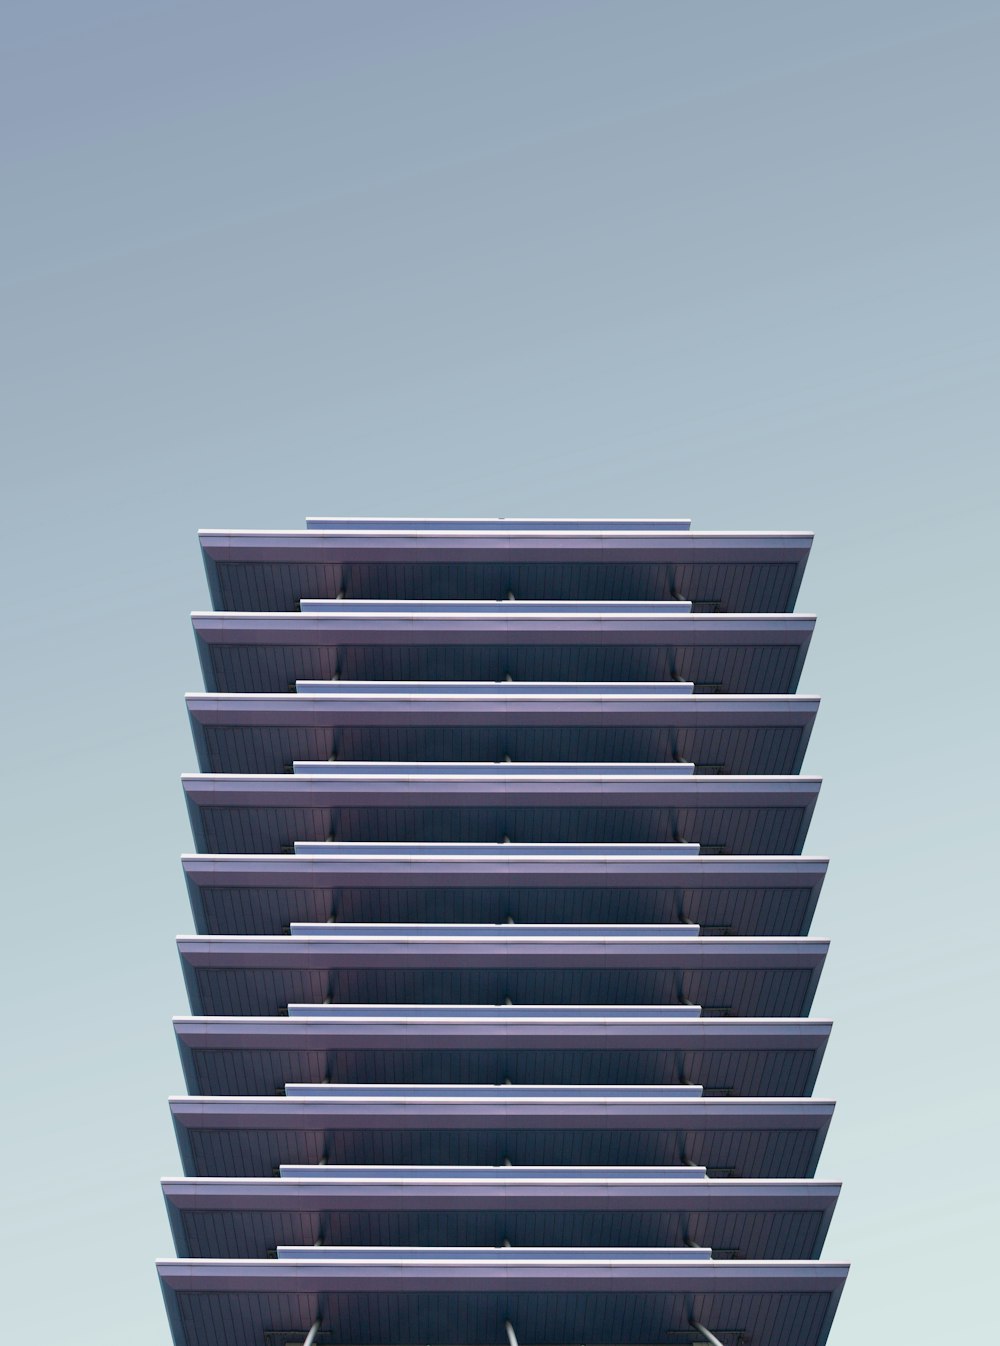 高層ビルの建築写真